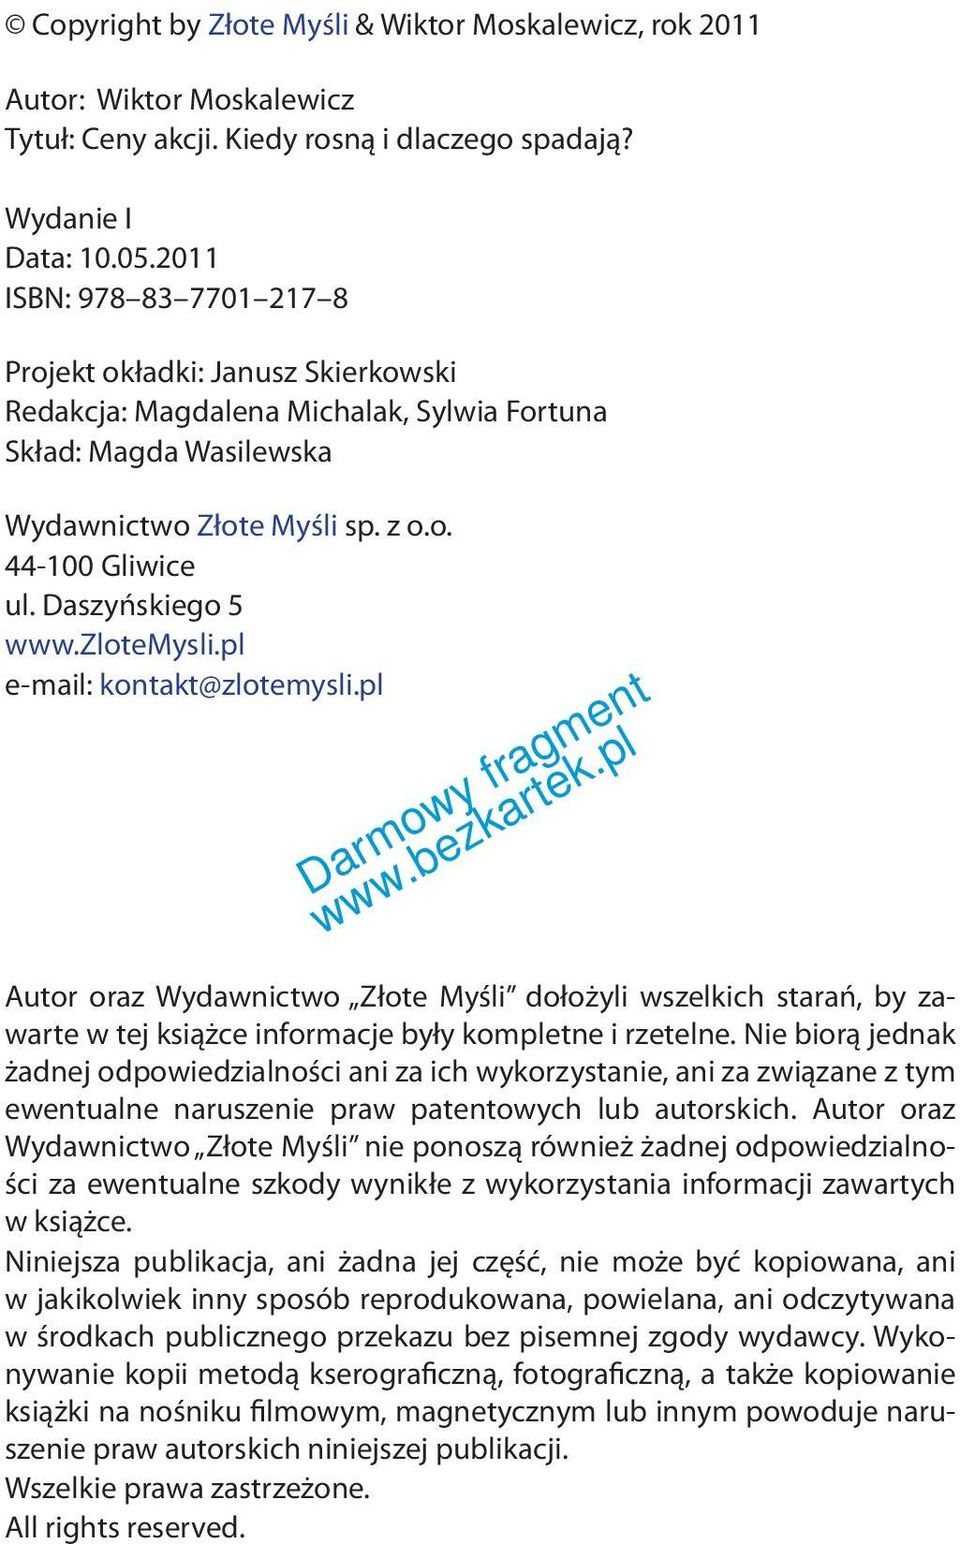 Daszyńskiego 5 www.zlotemysli.pl e-mail: kontakt@zlotemysli.pl Autor oraz Wydawnictwo Złote Myśli dołożyli wszelkich starań, by zawarte w tej książce informacje były kompletne i rzetelne.